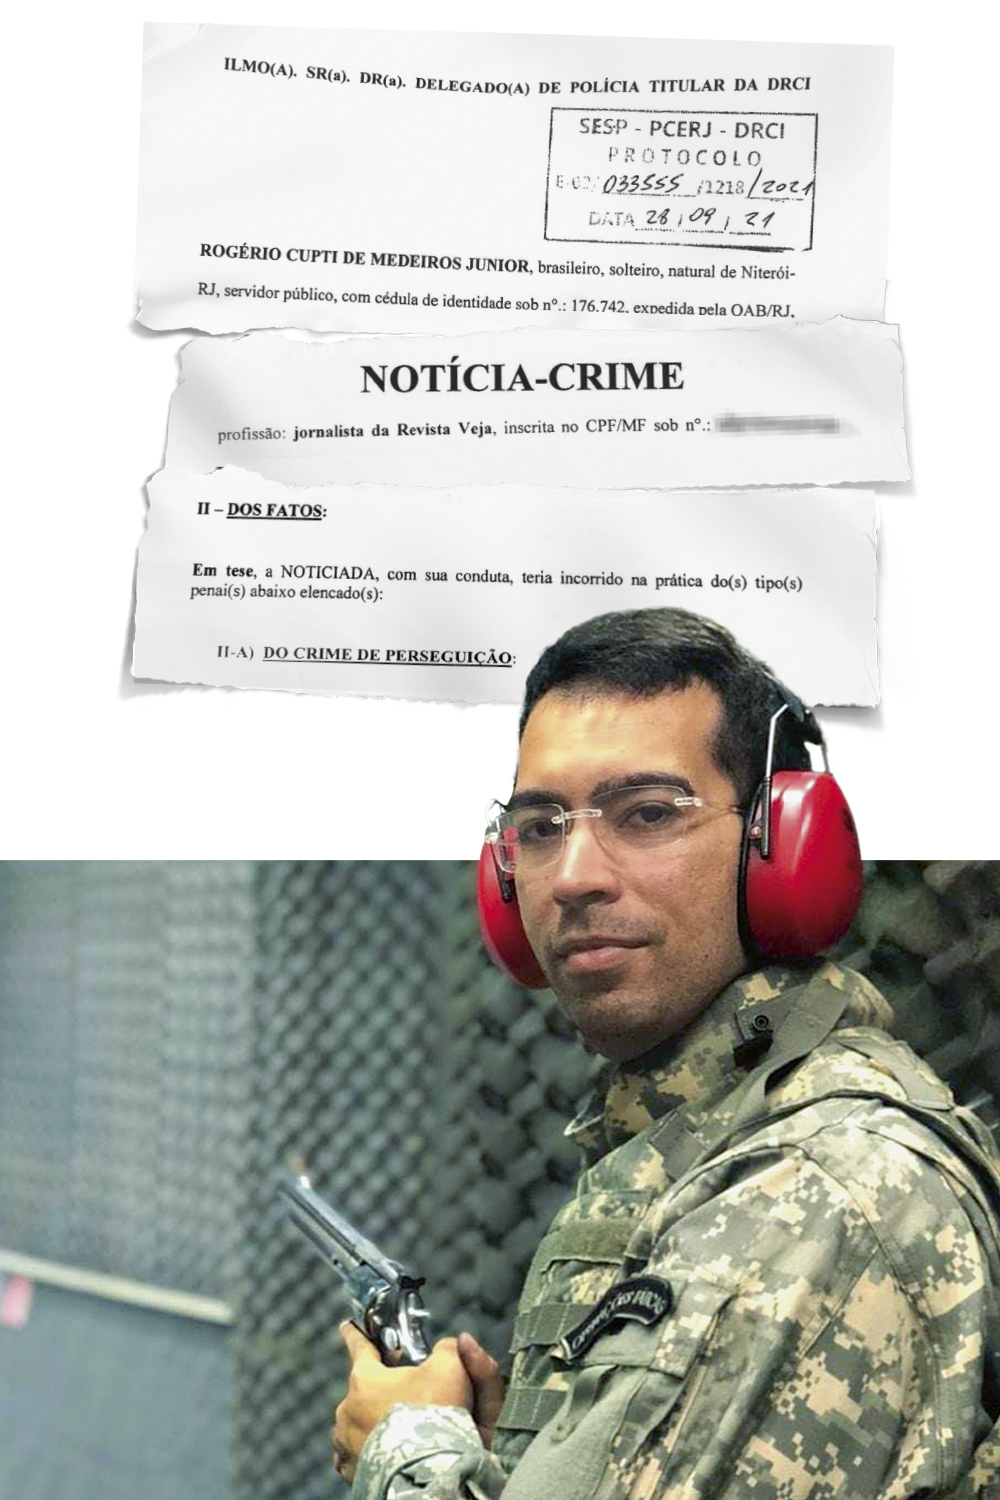 O QUEIXOSO - Medeiros, que fez registro na polícia contra VEJA (acima): servidor e consultor para porte de armas -